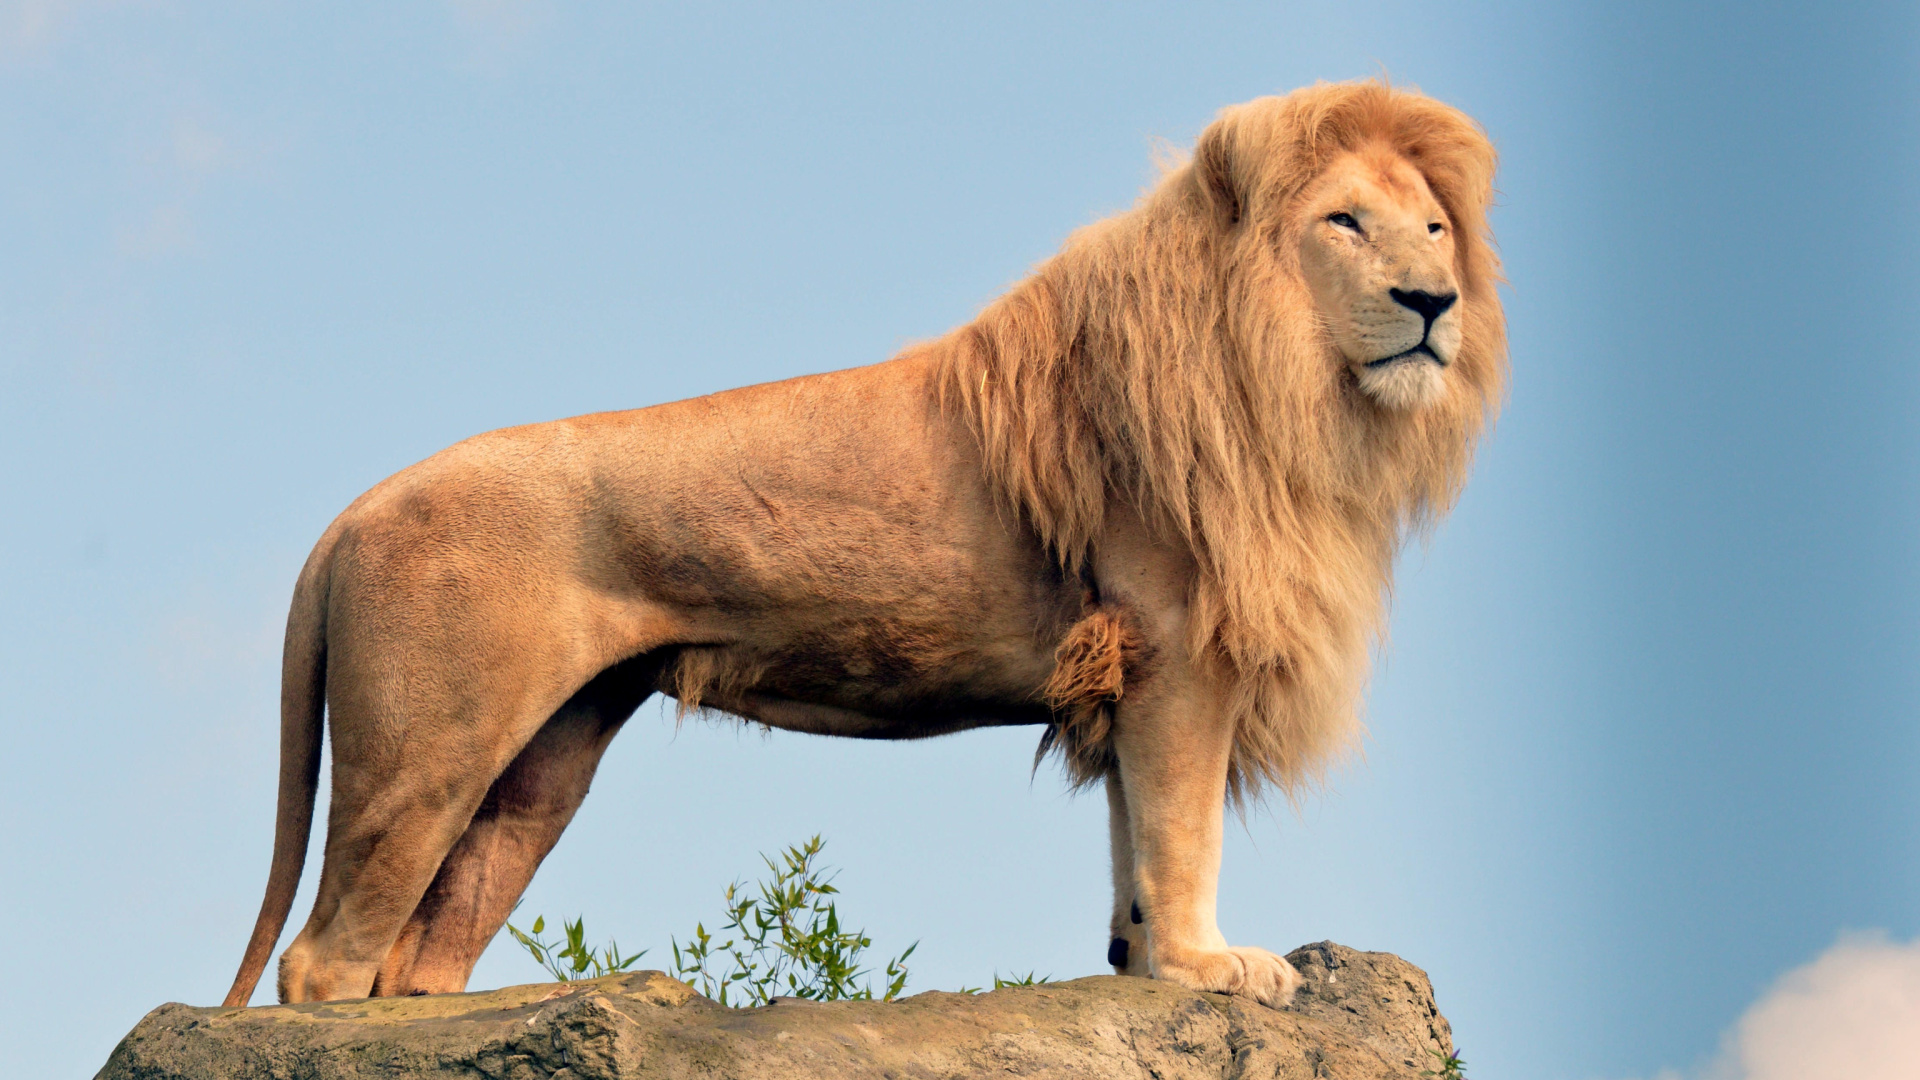 Обои Lion in Gir National Park 1920x1080